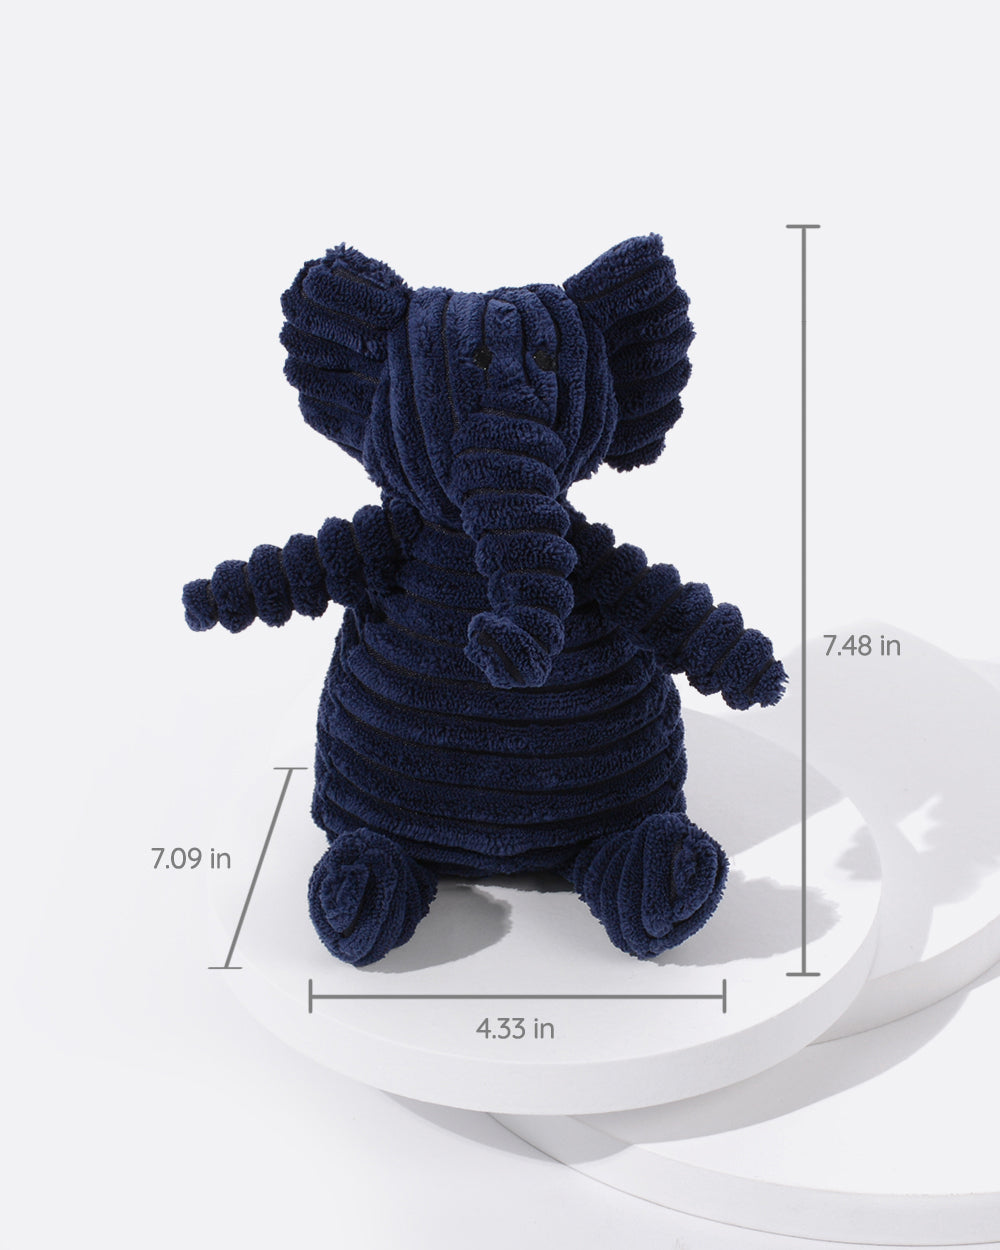 Plush Squeaky Dog Toy - Elephant